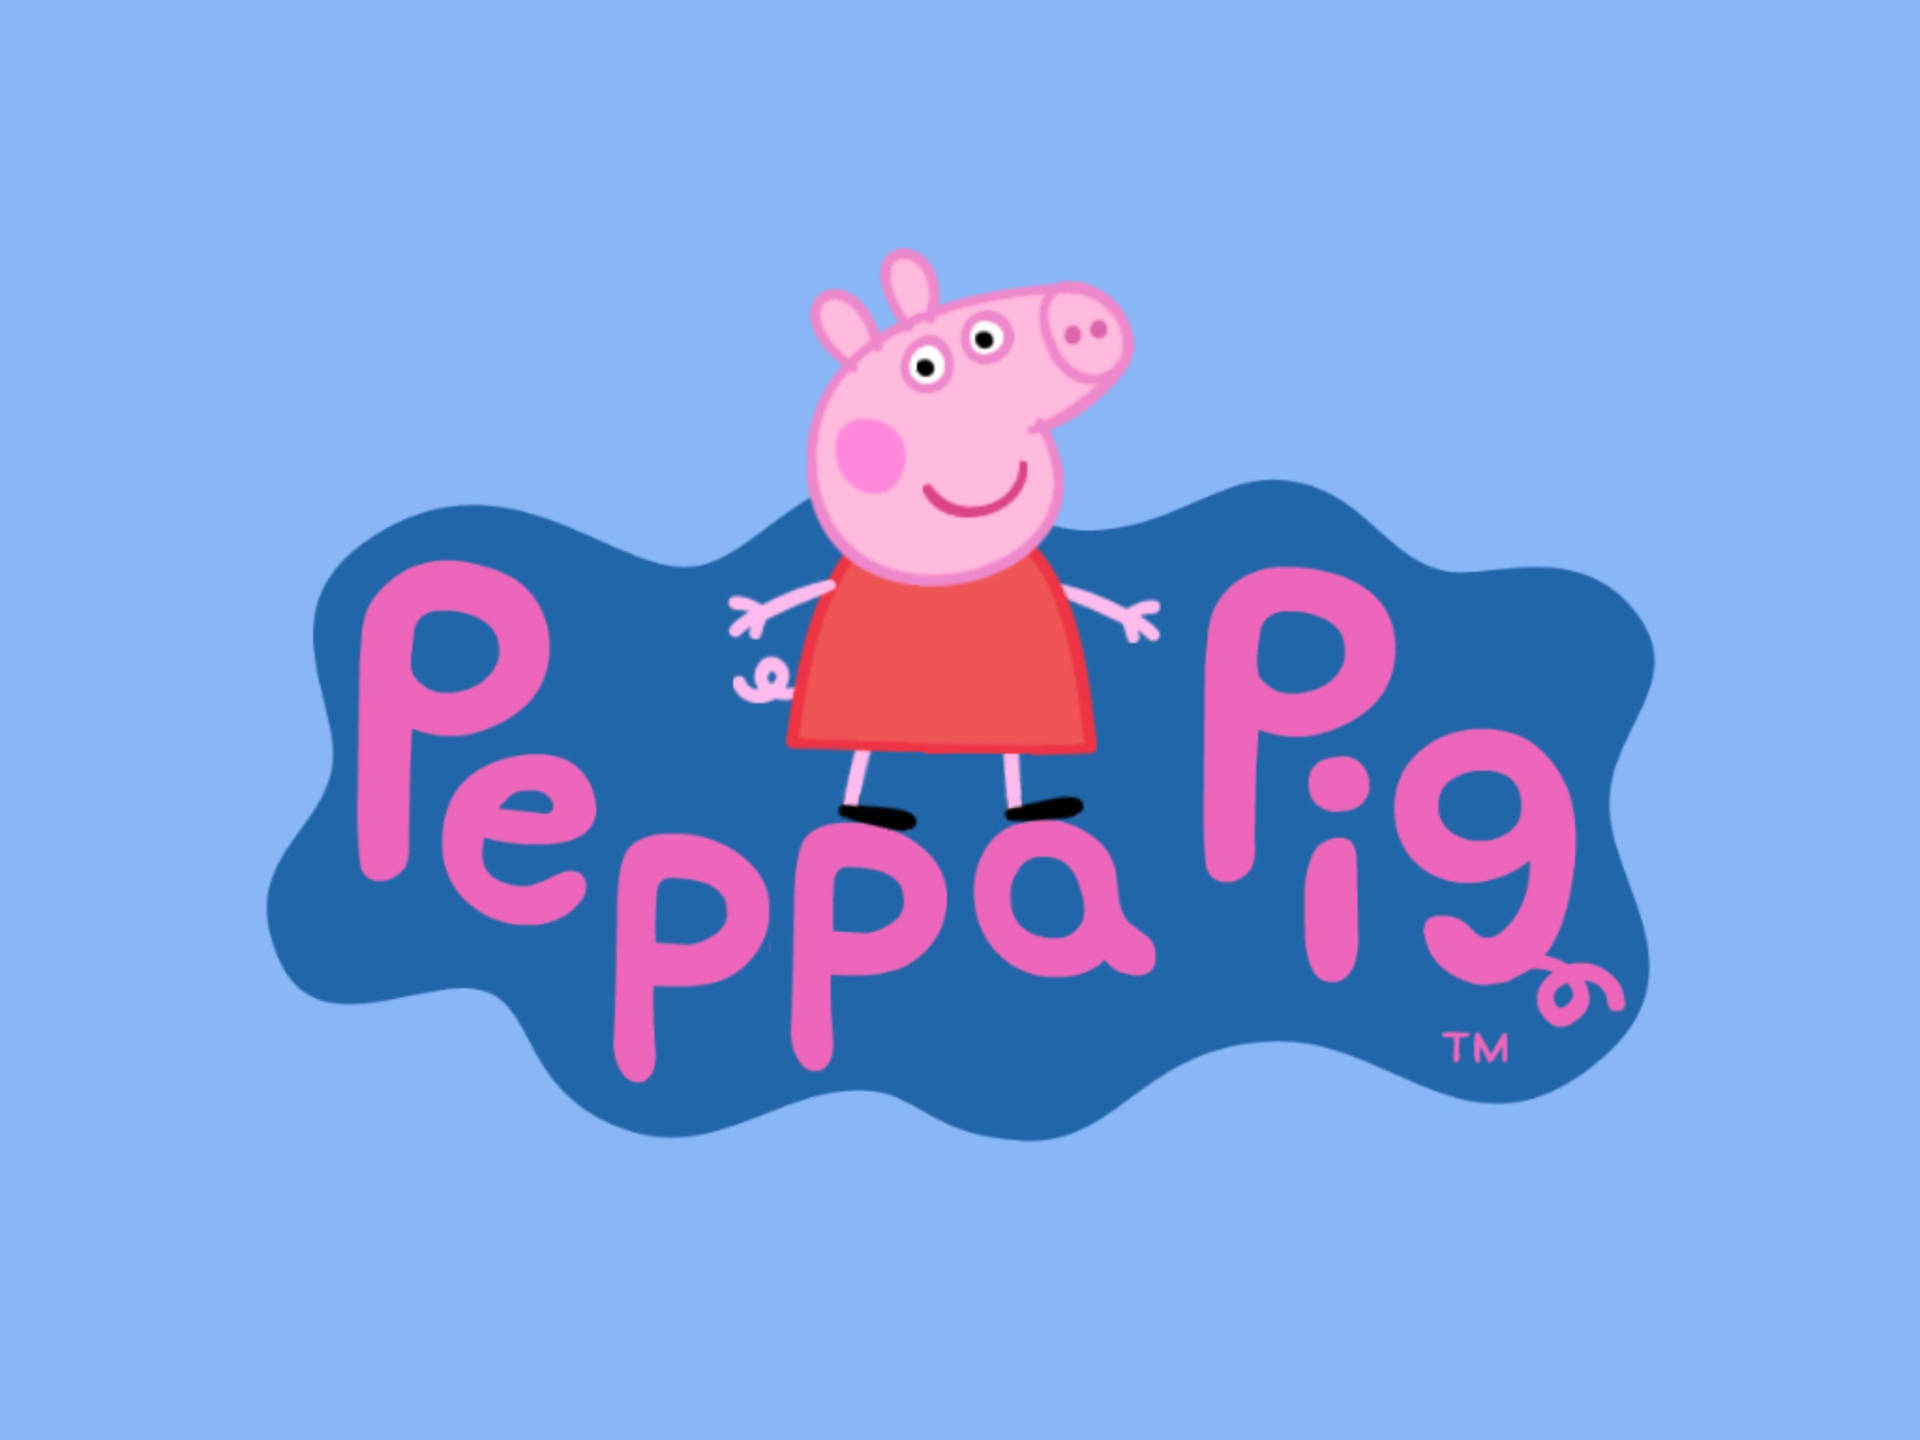 Peppa Pig iPad Title Wallpaper